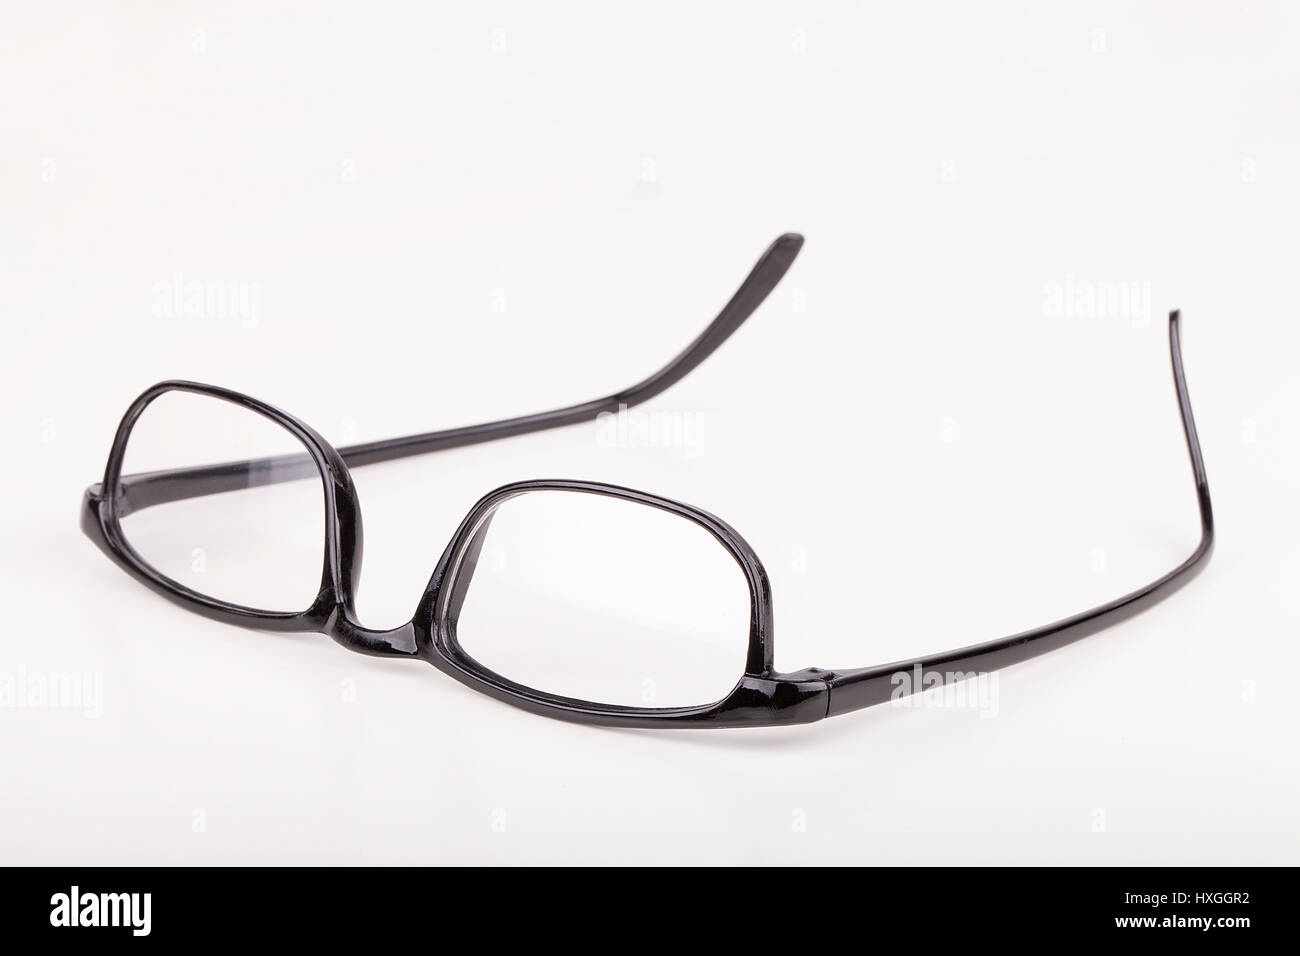 Reading glasses isolated on white background Stock Photo - Alamy